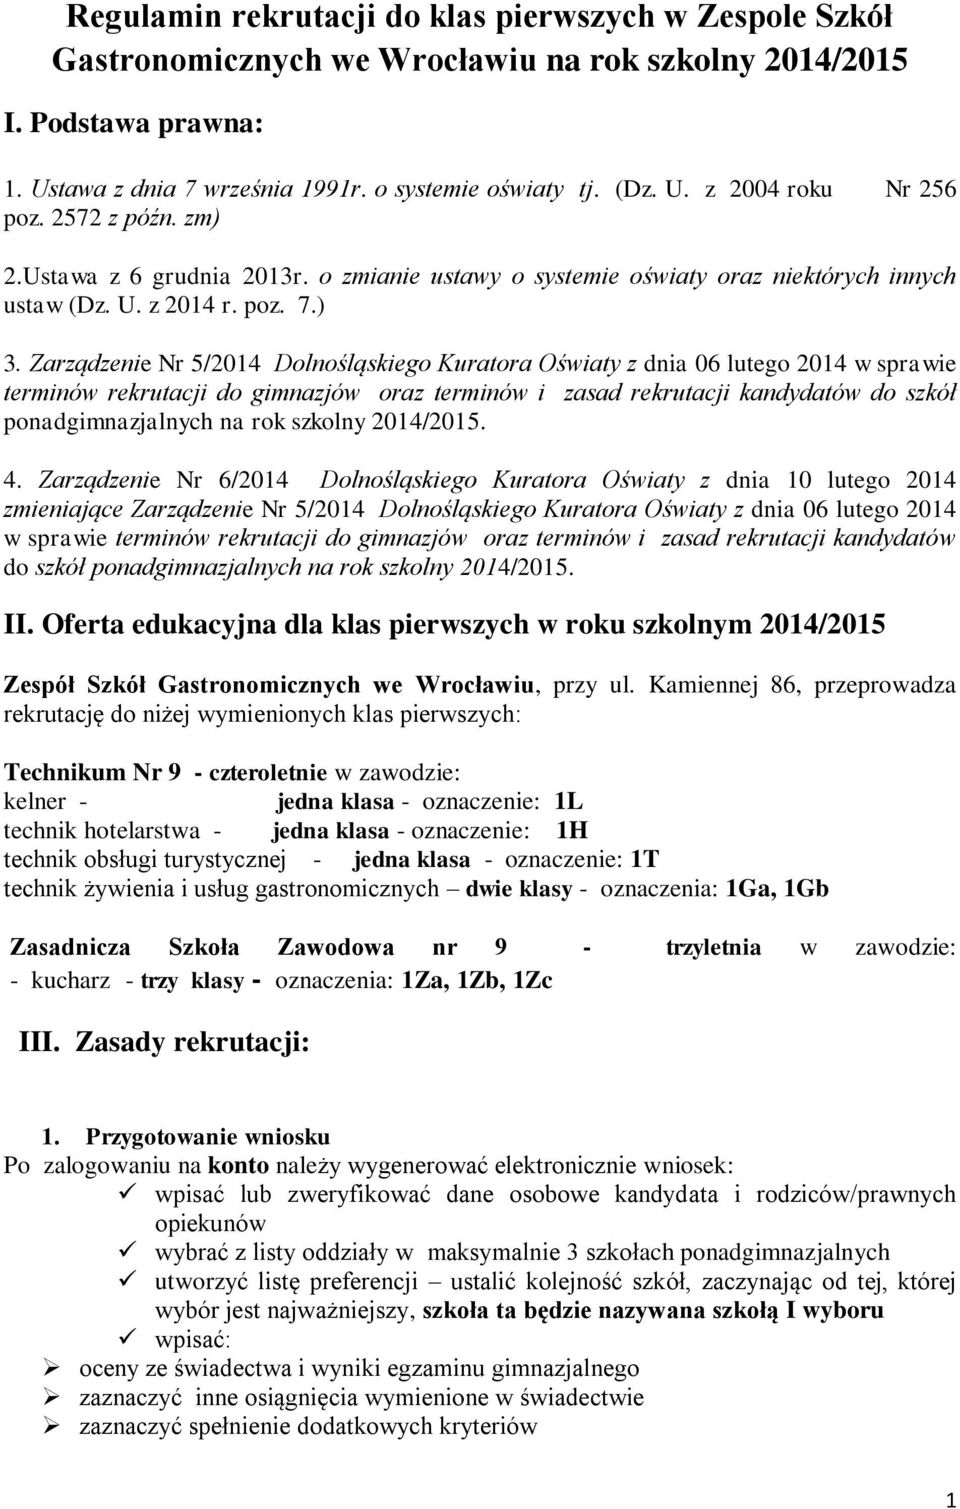 Zarządzenie Nr 5/2014 Dolnośląskiego Kuratora Oświaty z dnia 06 lutego 2014 w sprawie terminów rekrutacji do gimnazjów oraz terminów i zasad rekrutacji kandydatów do szkół ponadgimnazjalnych na rok